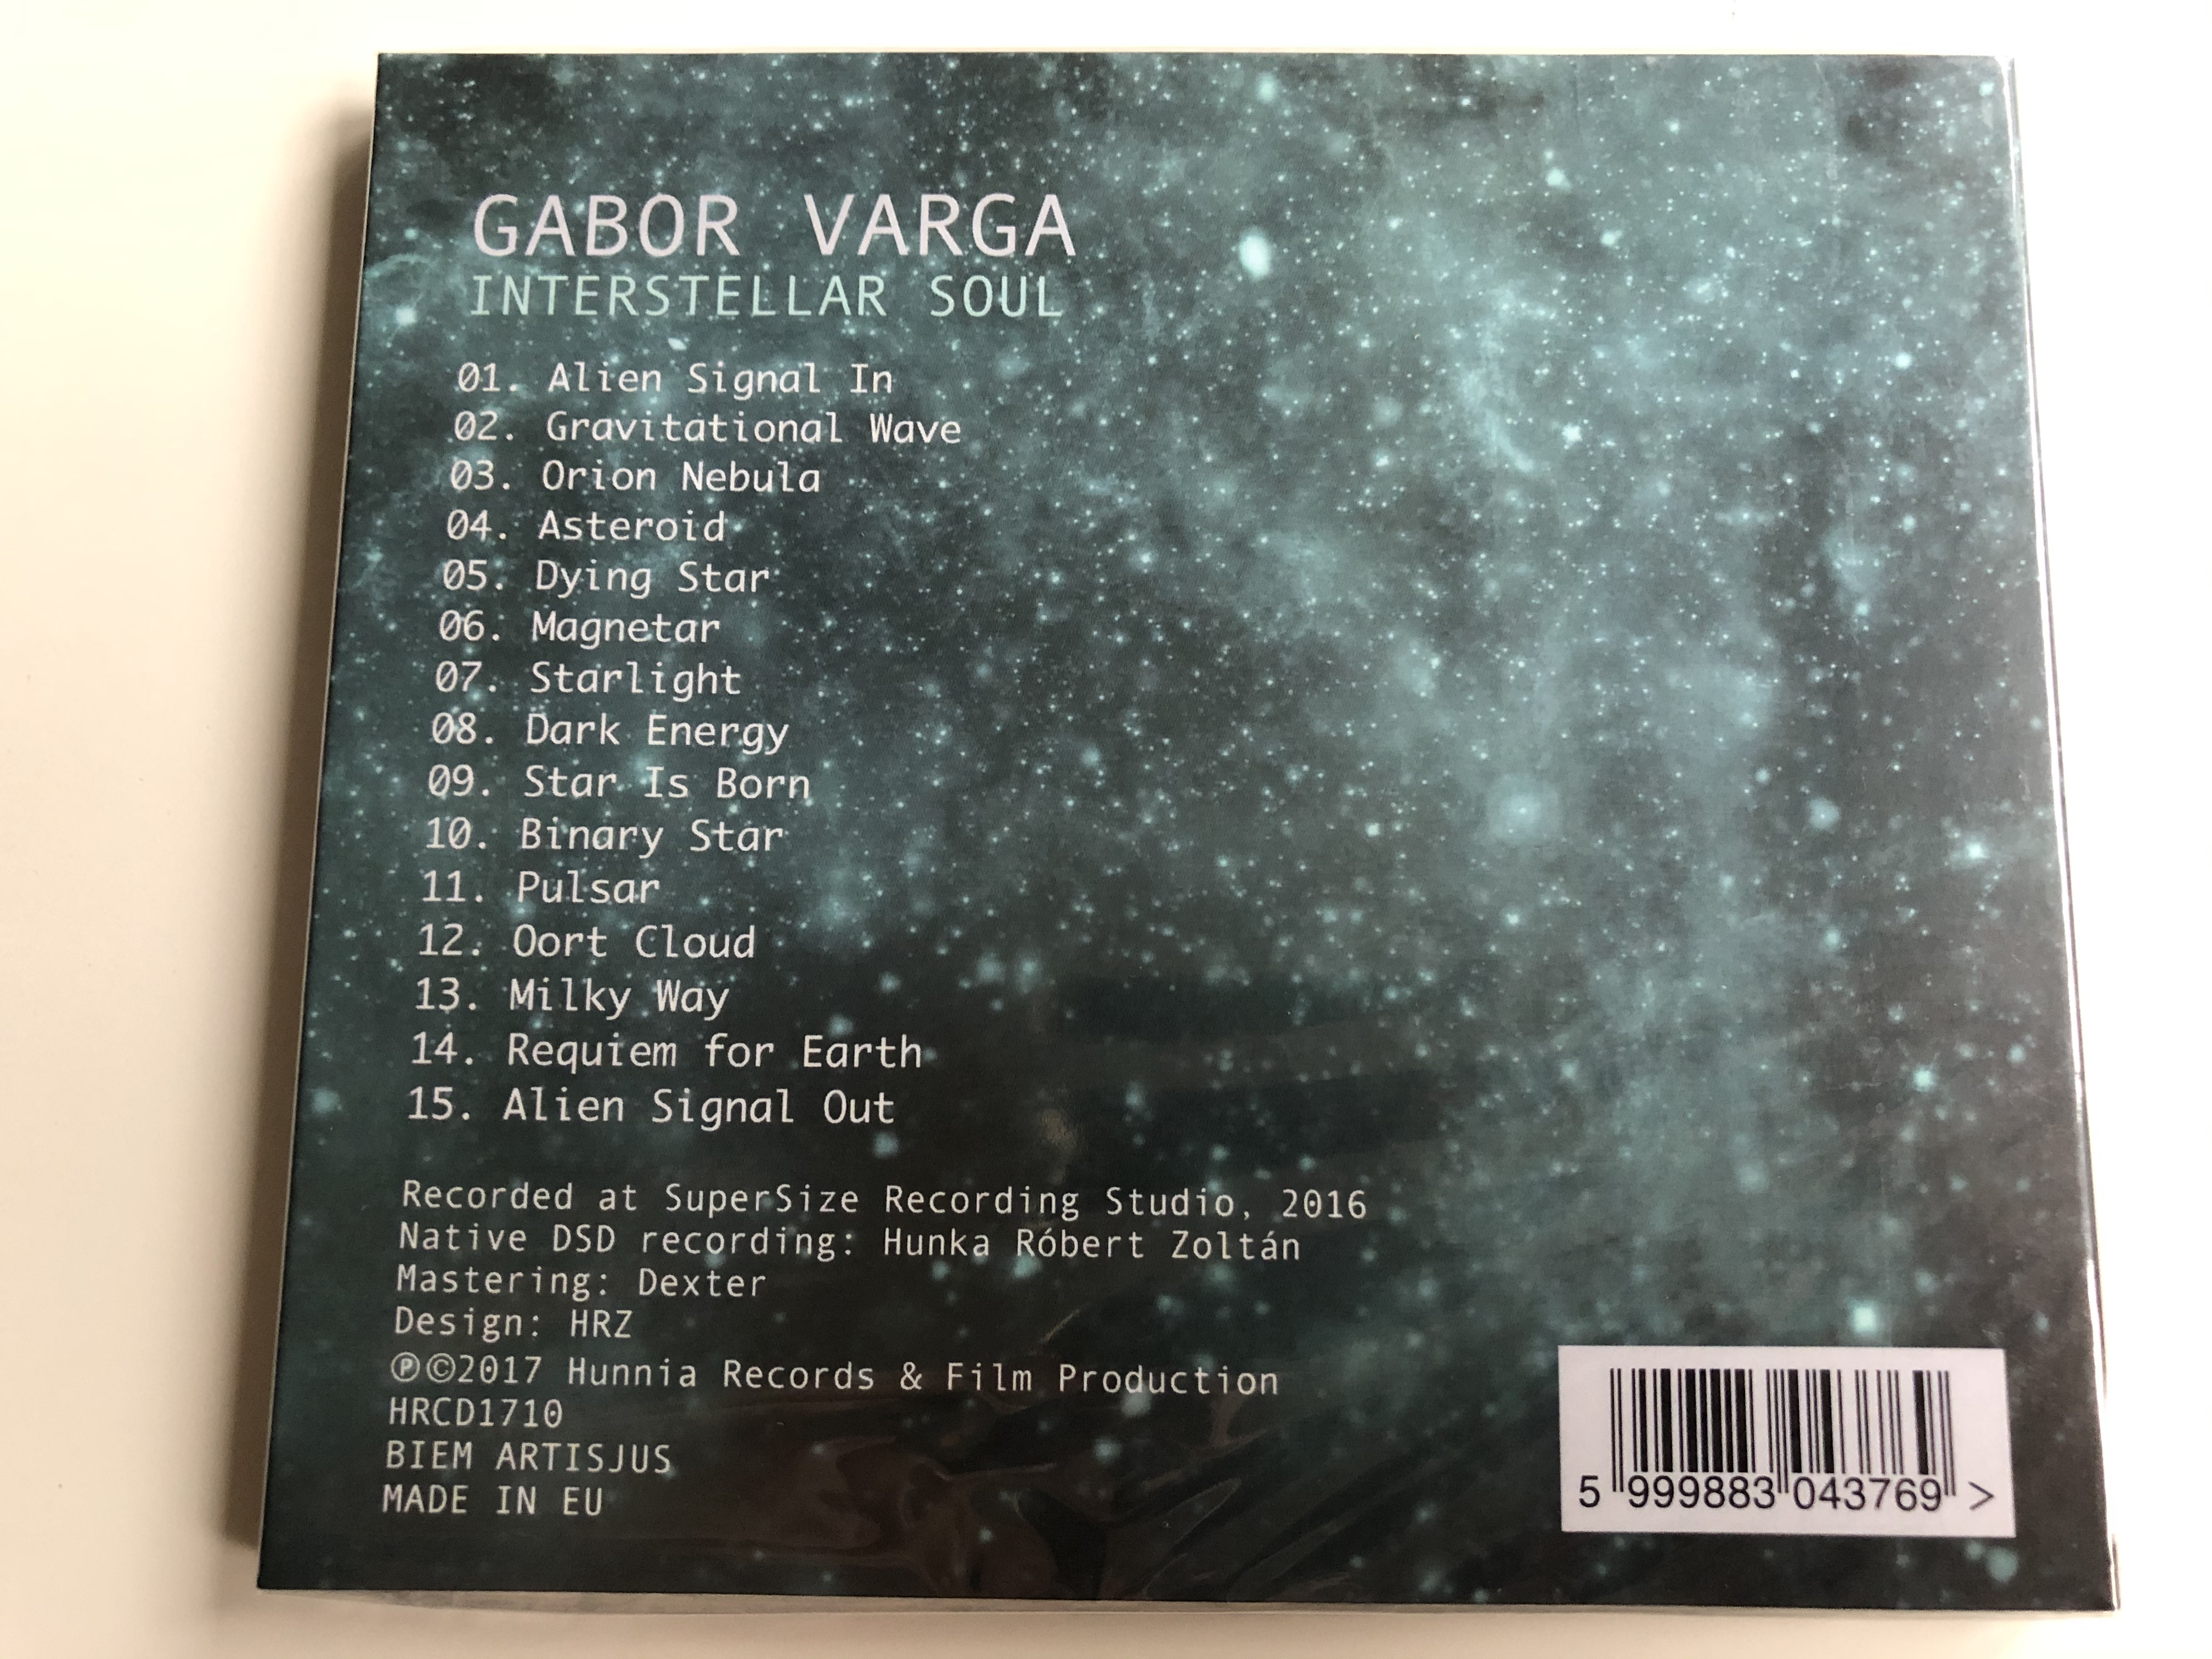 gabor-varga-interstellar-soul-hunnia-records-film-production-audio-cd-2017-hrcd1710-2-.jpg